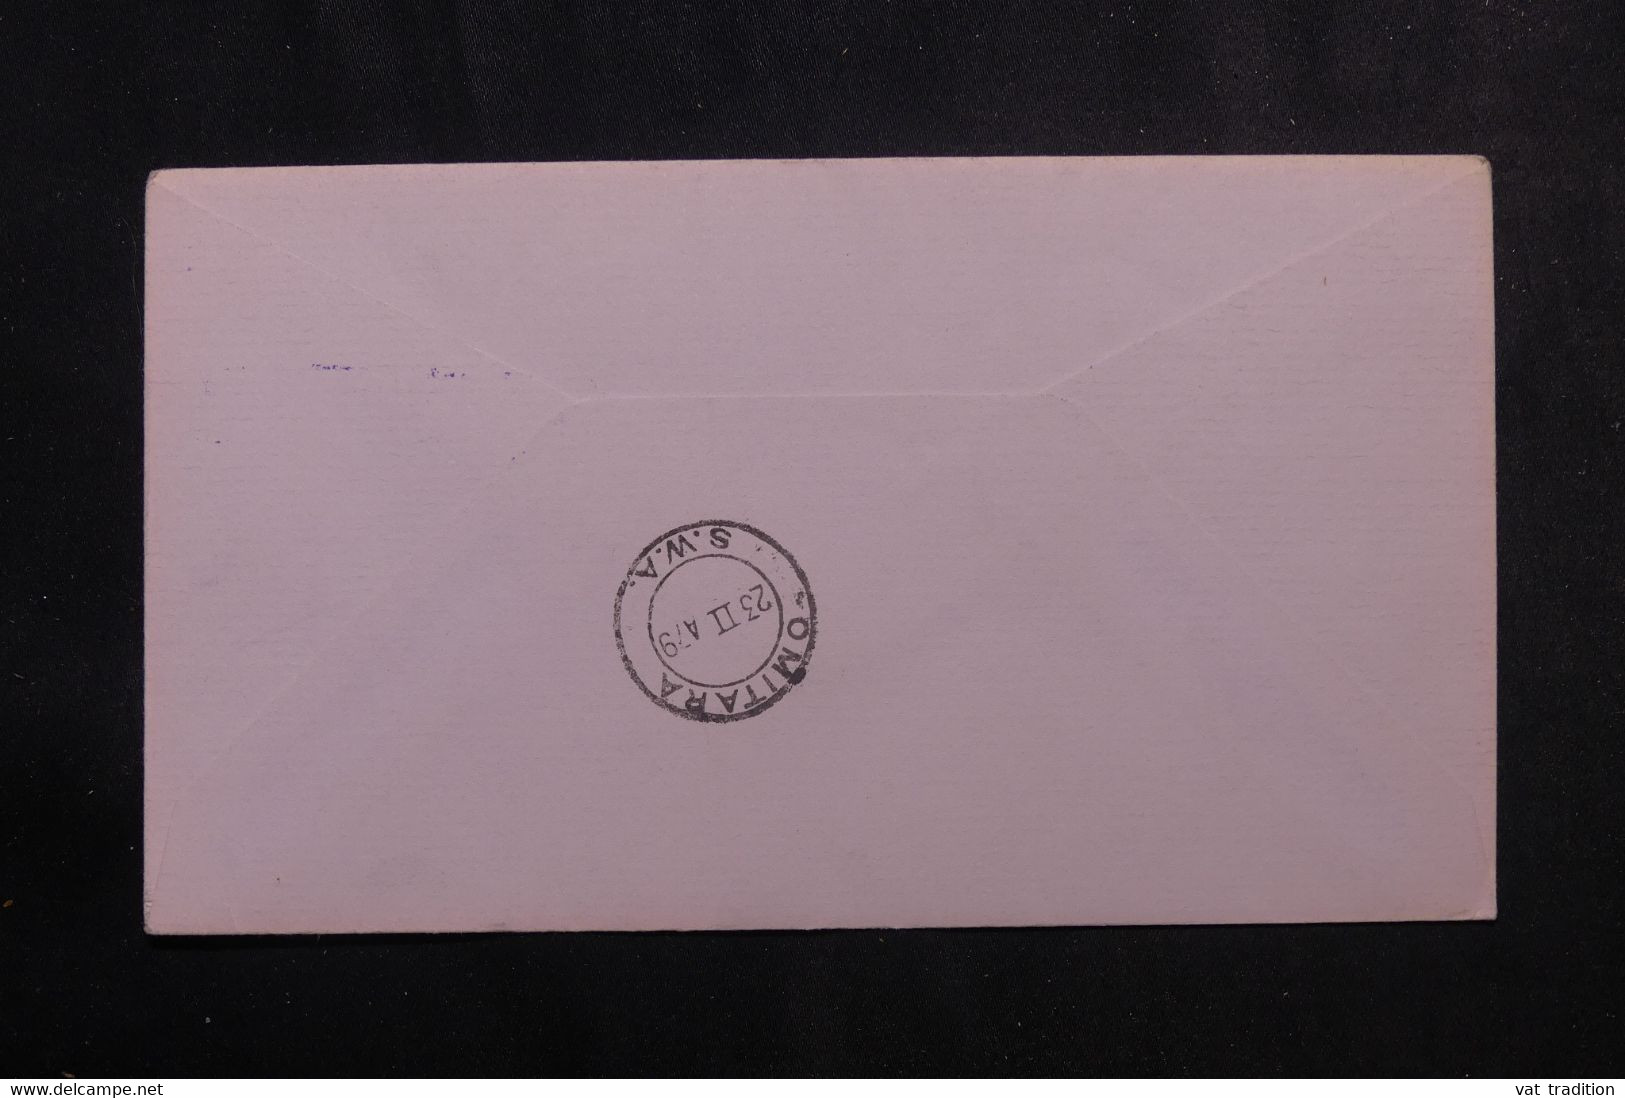 AFRIQUE DU SUD - Enveloppe De Karibid Pour Omitara En 1979 Avec étiquette Postale - L 73557 - Lettres & Documents